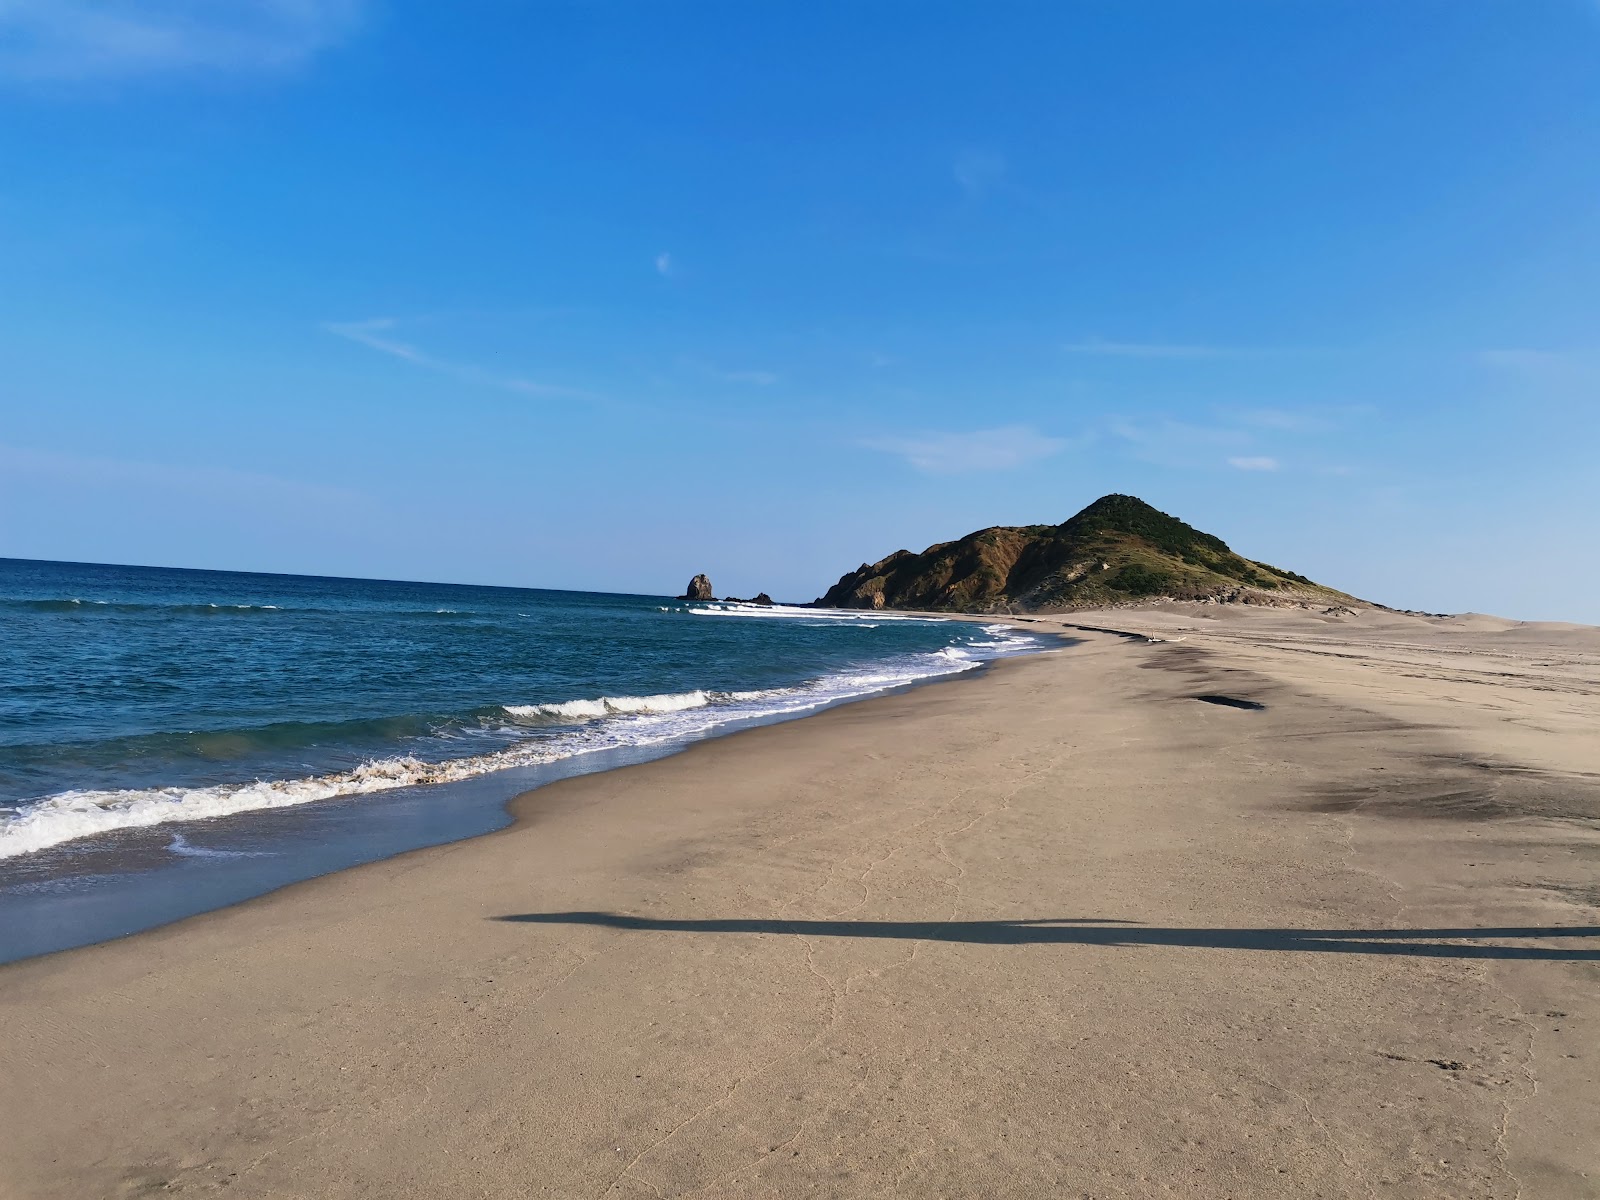 Foto di Guelaguechi beach con una superficie del sabbia grigia